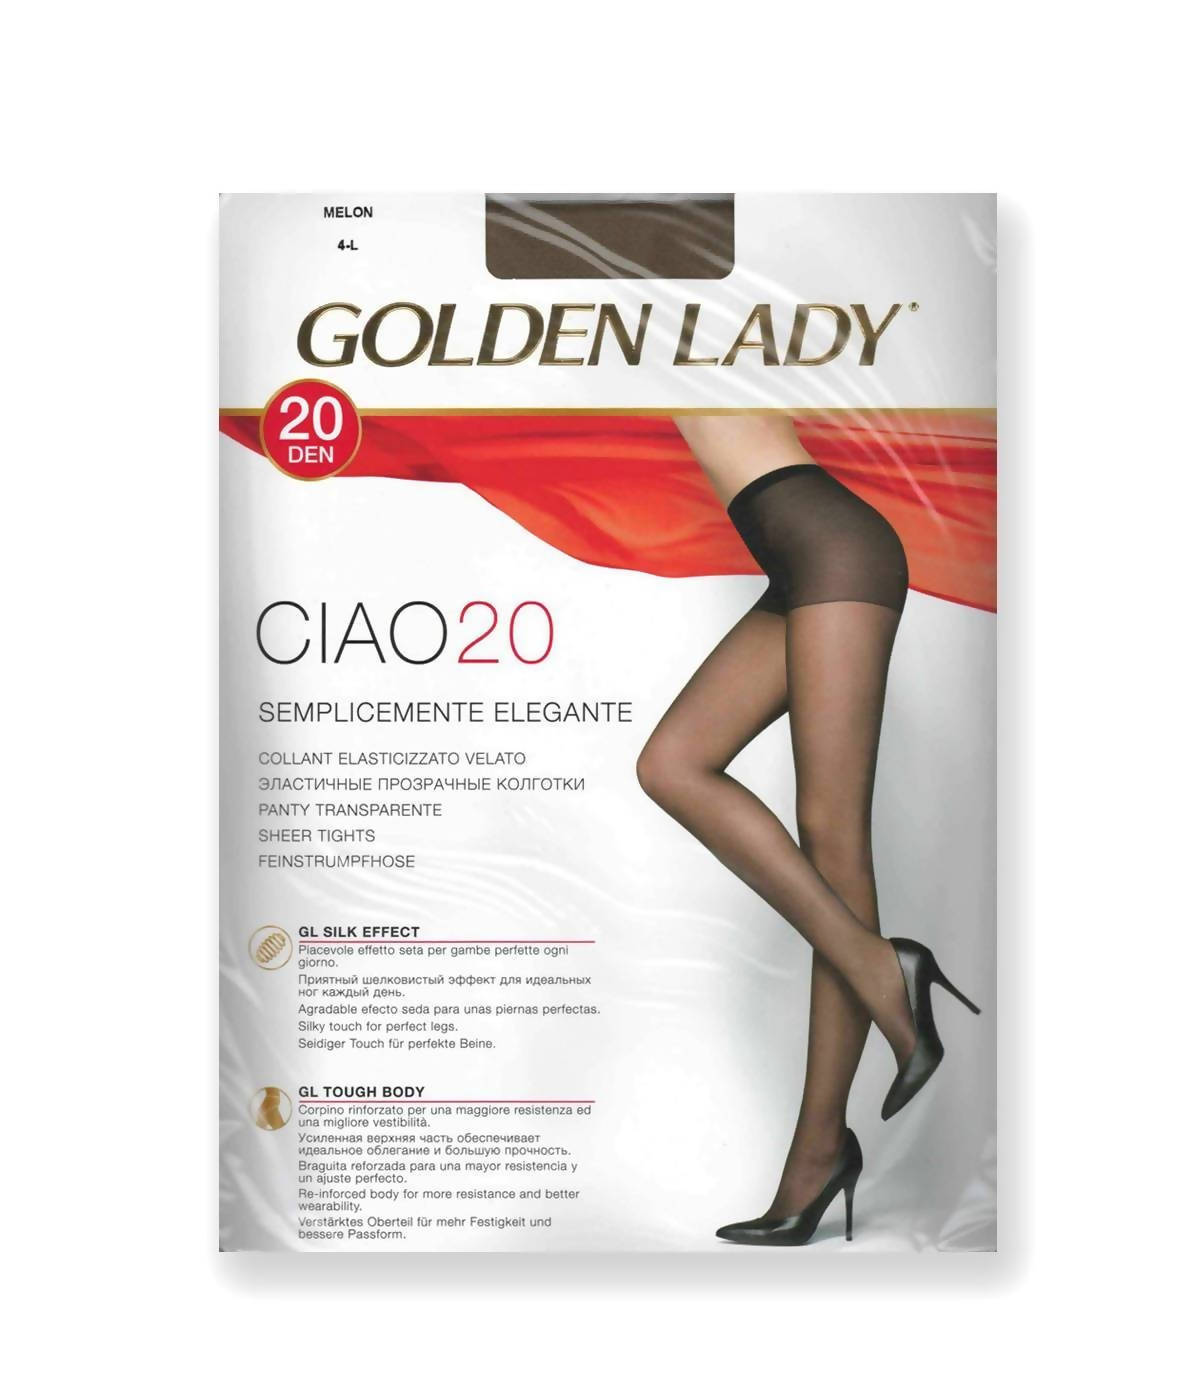 6x Collant Donna Golden Lady Calze Da Donna 20 Dan Ciao 20 Taglia Xl Art.  740 Fi 001 - commercioVirtuoso.it